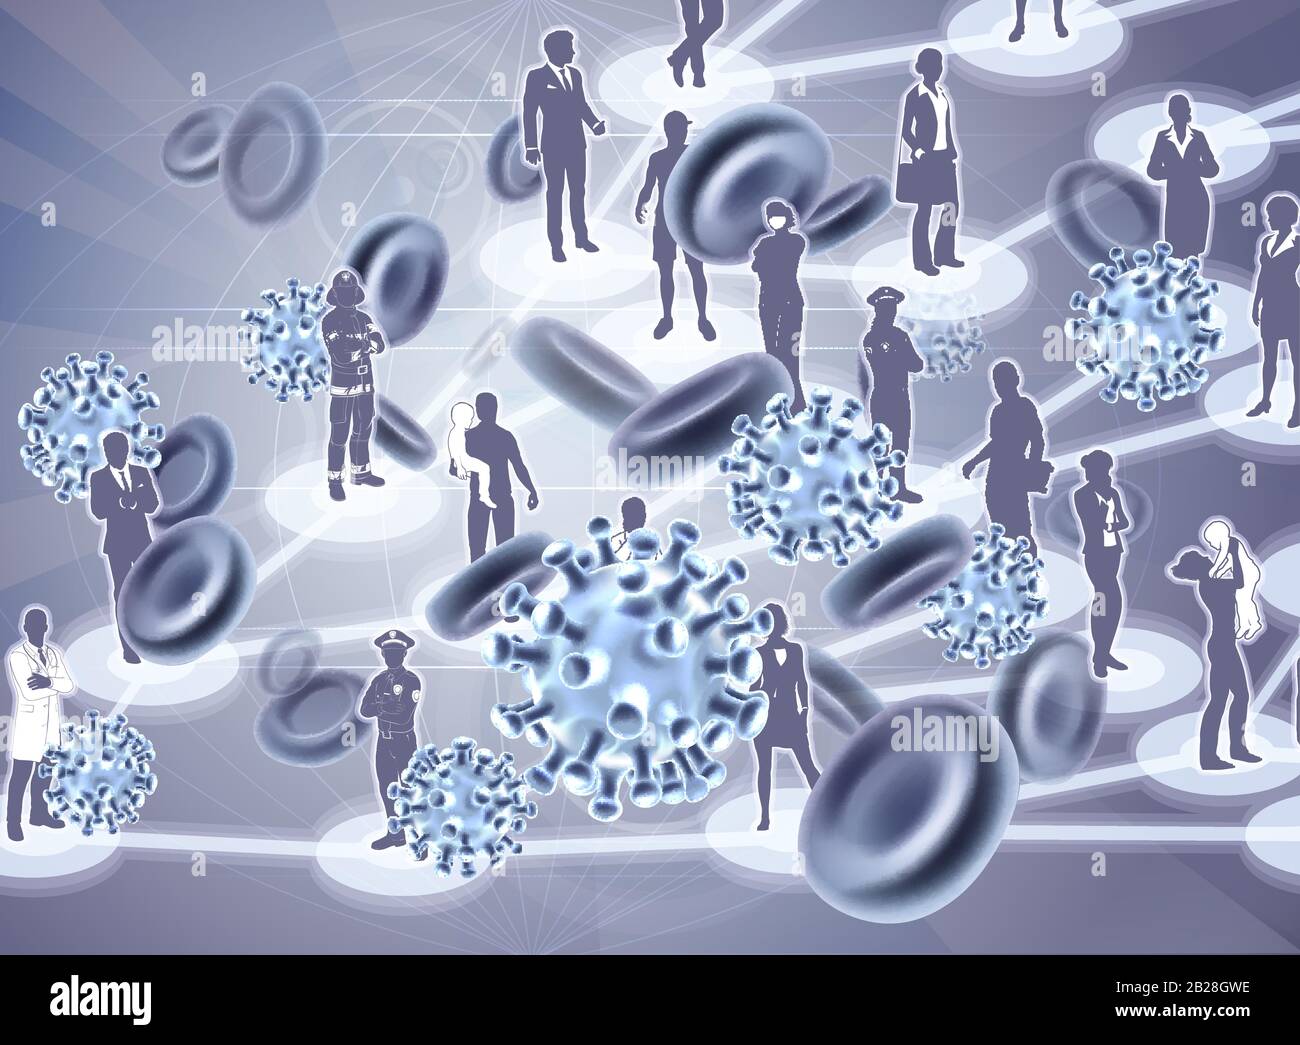 Virus Cellule Diffusione Virale Pandemic Persone Concetto Illustrazione Vettoriale